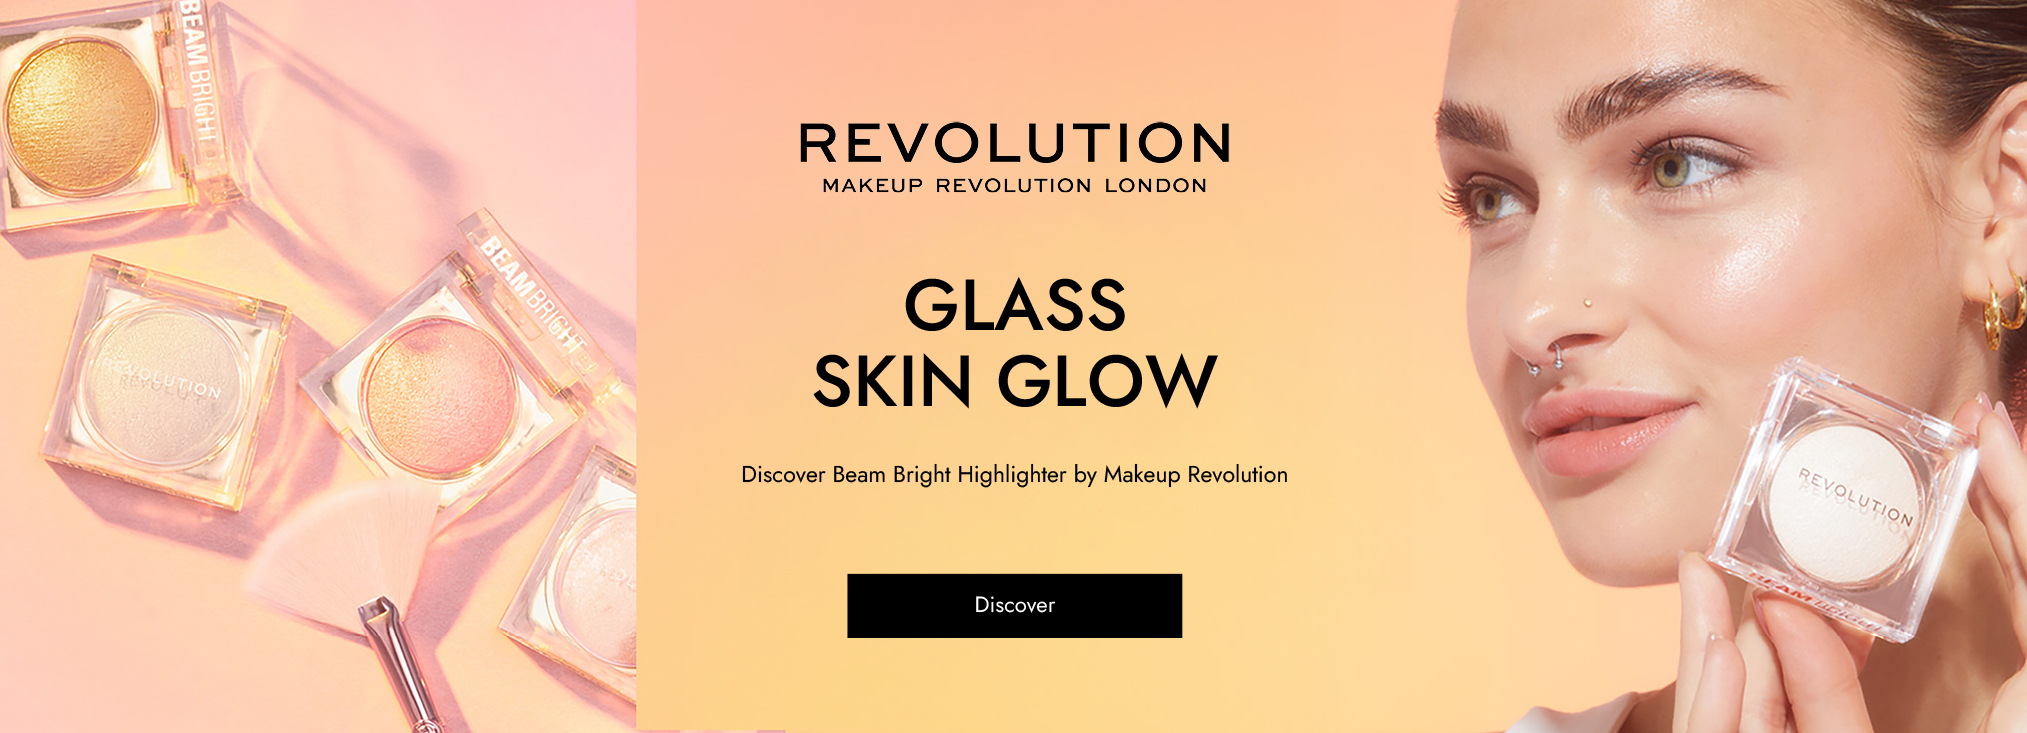 Makeup Revolution_makeup